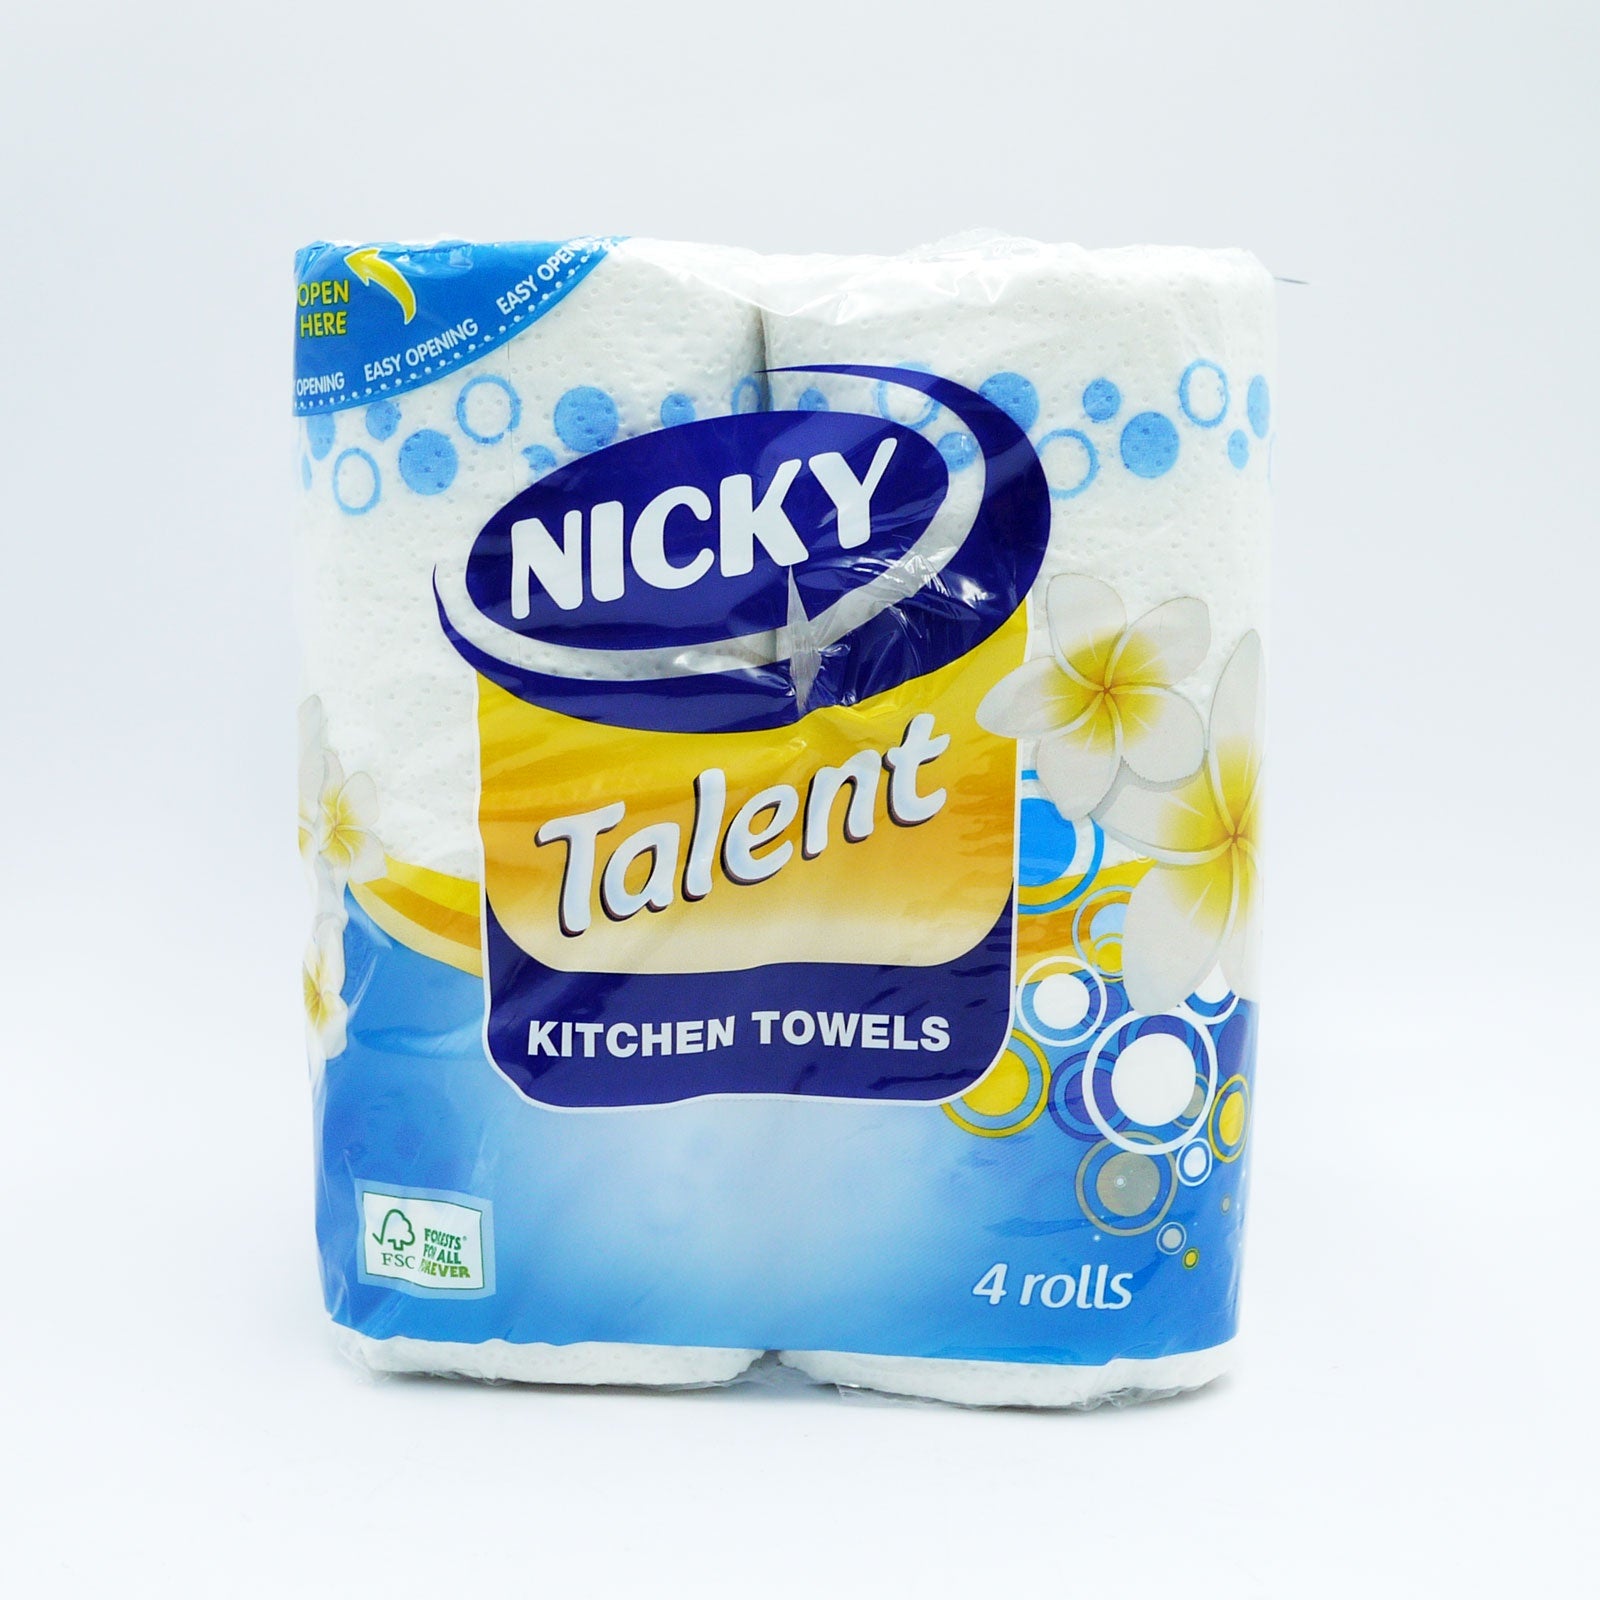 NICKY TALENT KITCHEN TOWEL 4pk